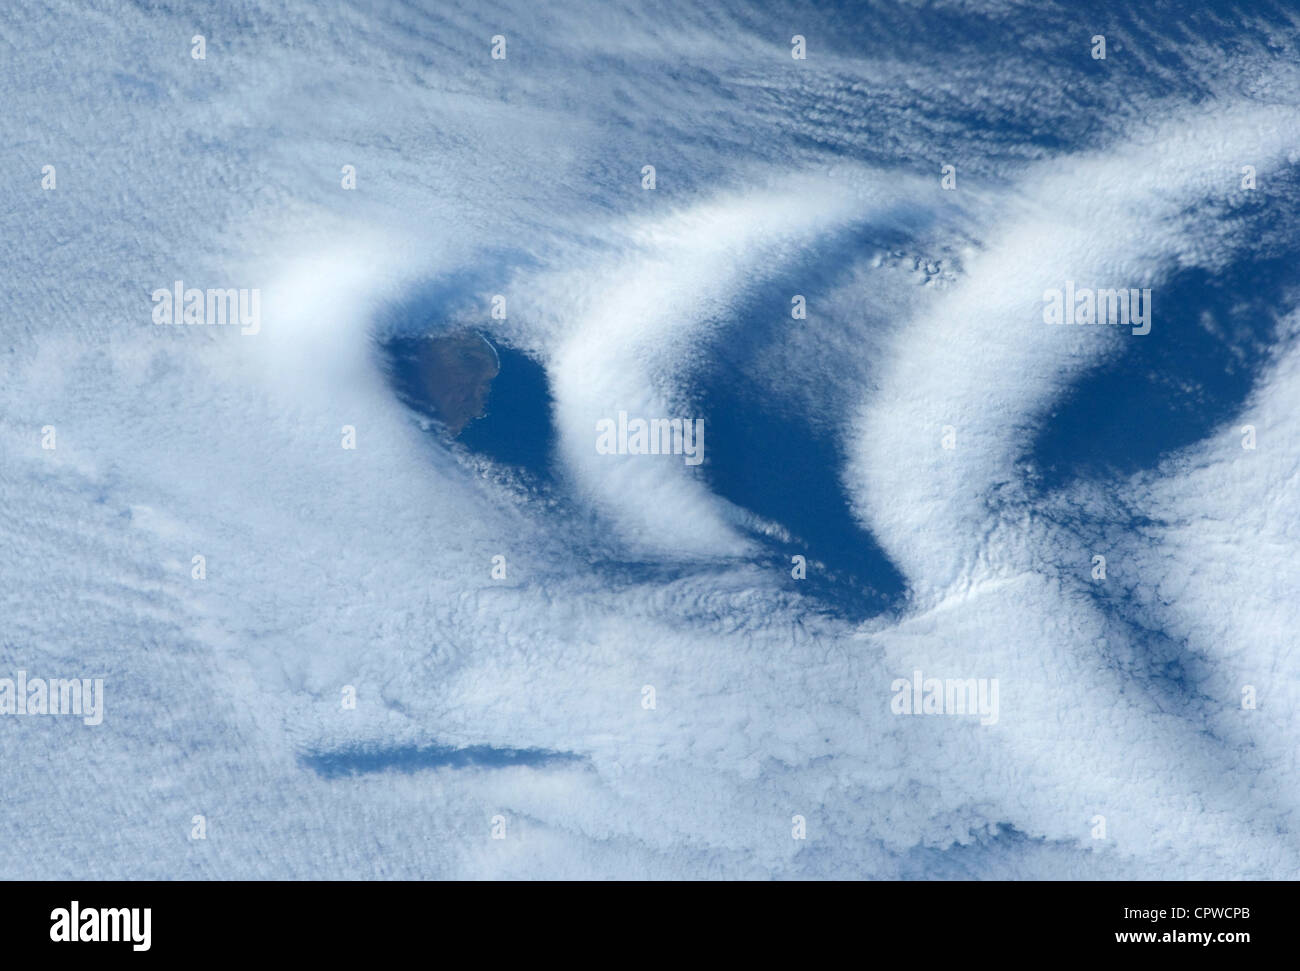 La formation de nuages d'onde dans le service, ou sous le vent, du côté de l'île aux Cochons, "Pig Island" dans le sud de l'Océan Indien. Banque D'Images